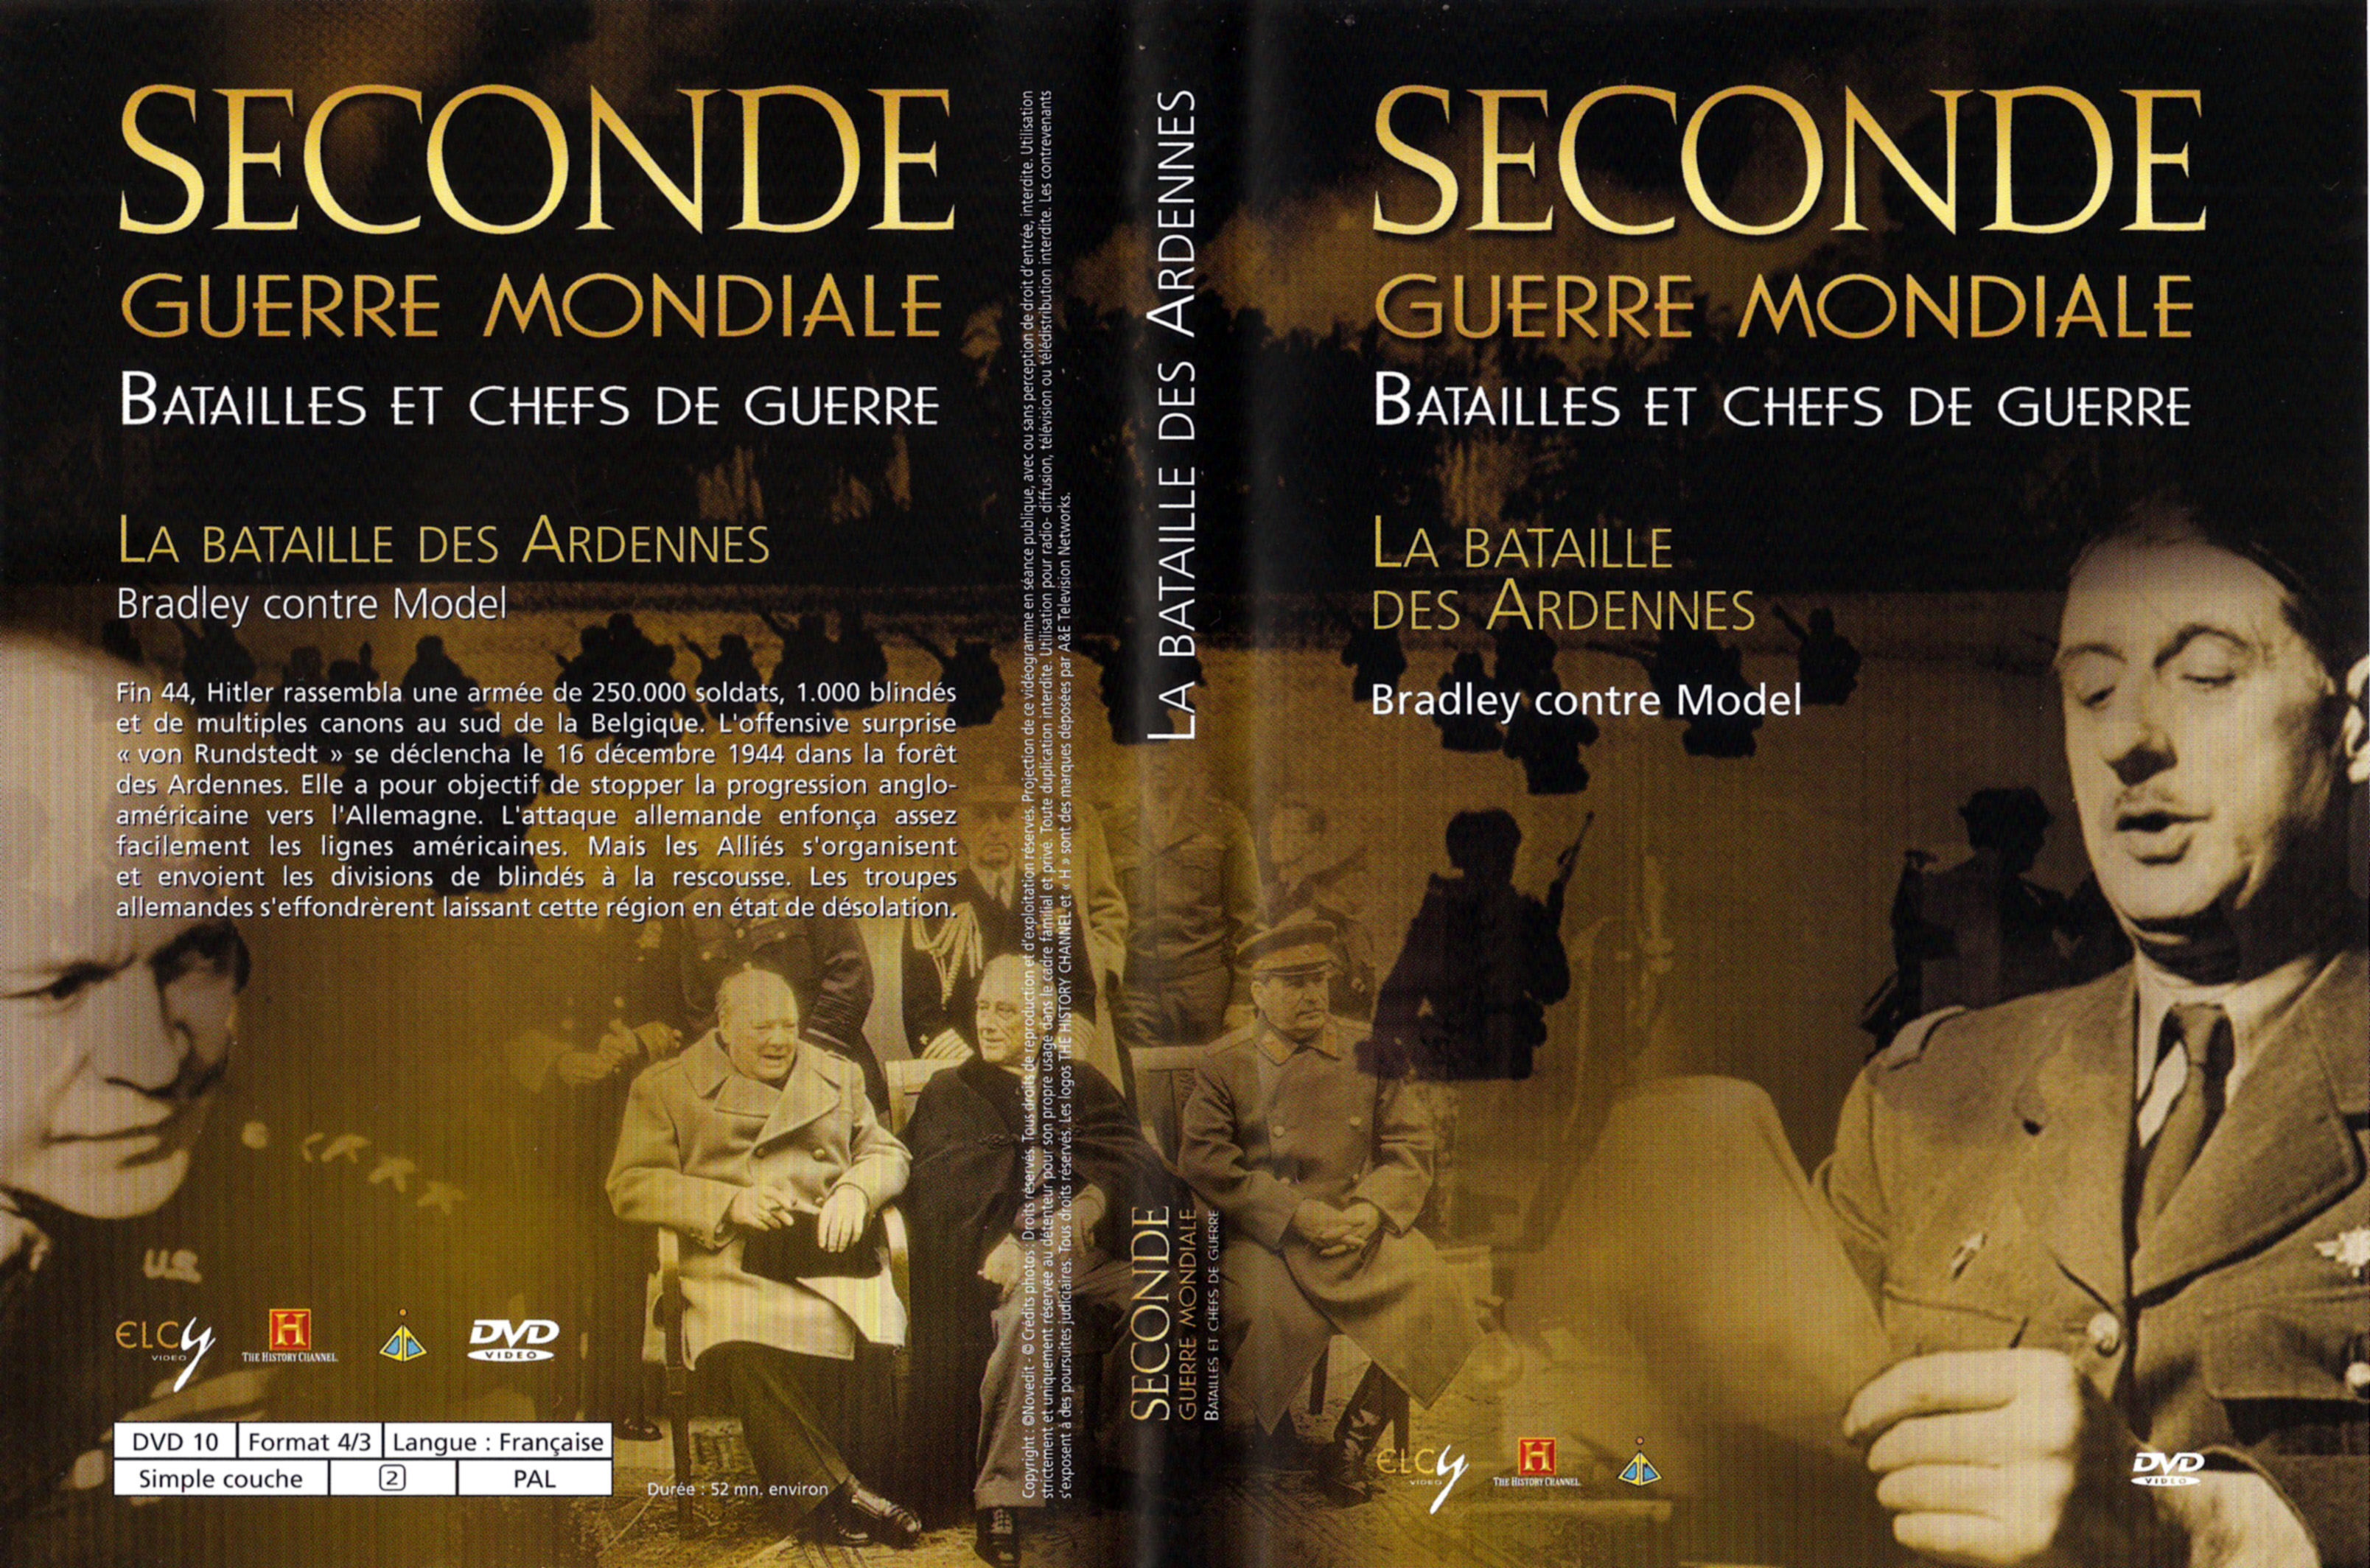 Jaquette DVD Seconde guerre mondiale batailles et chefs de guerre - La bataille des Ardennes